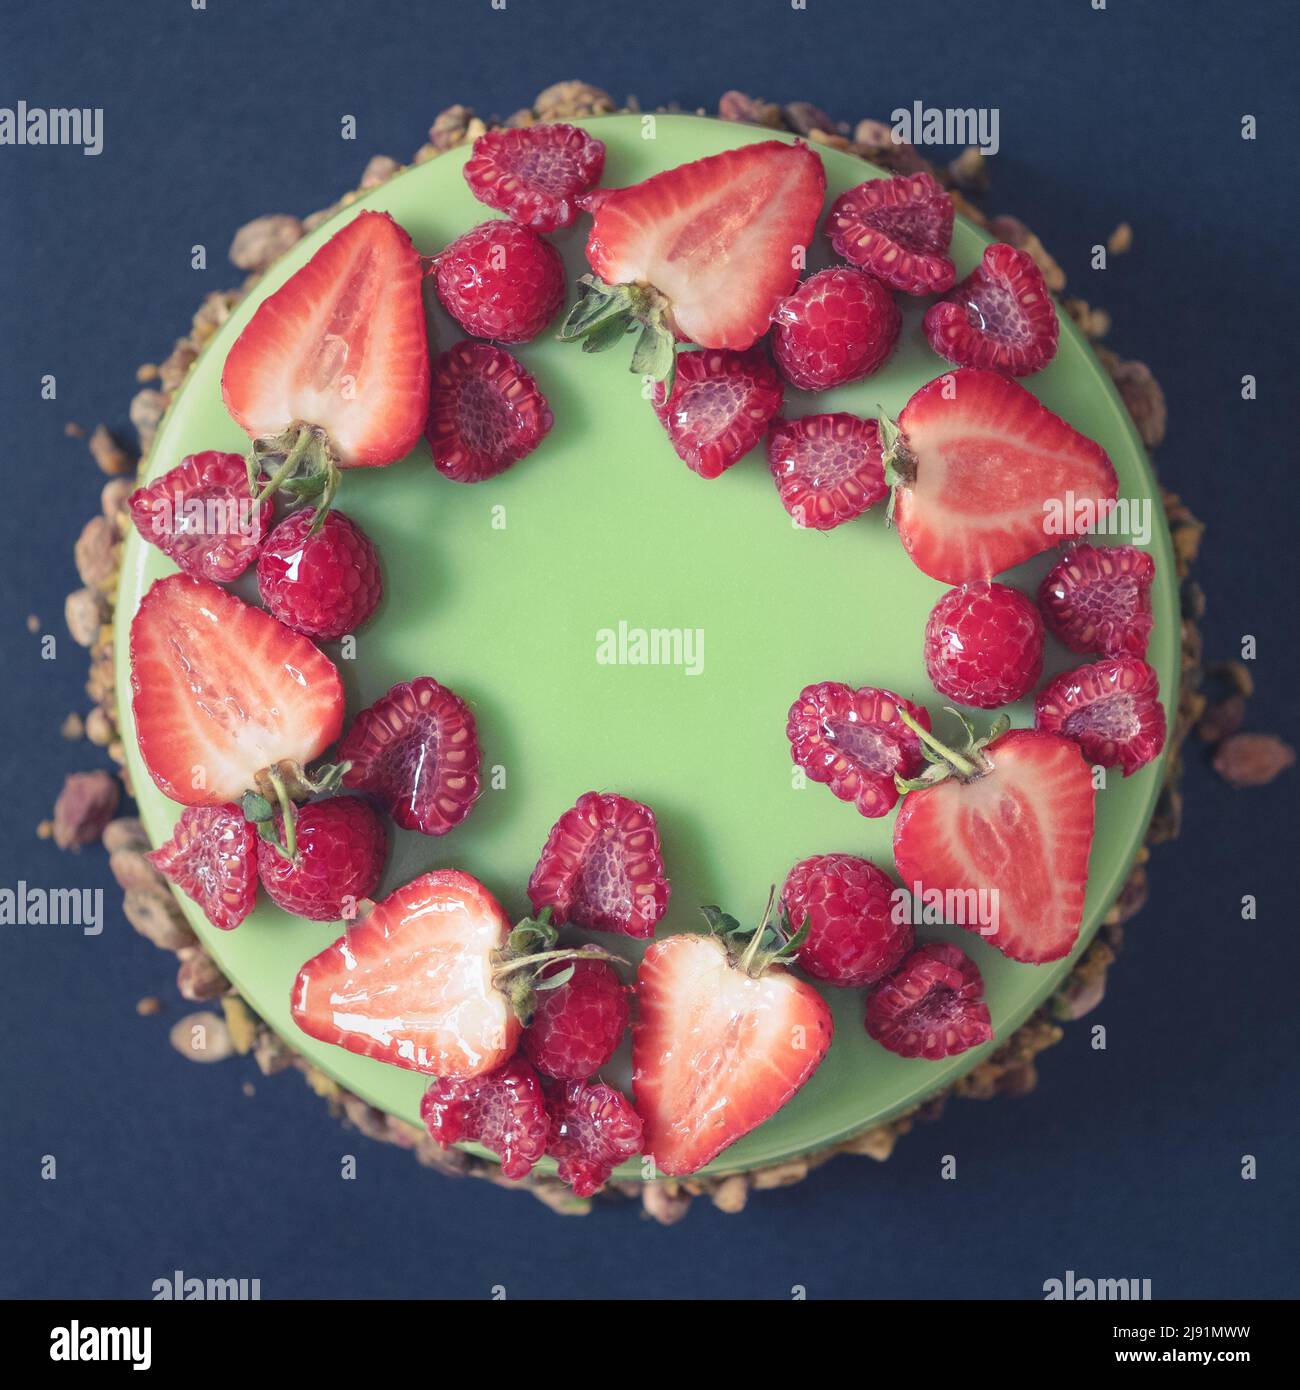 Eine wunderschöne Pistachio-Geburtstagstorte, gekrönt mit frischen Erdbeeren und Himbeeren Stockfoto